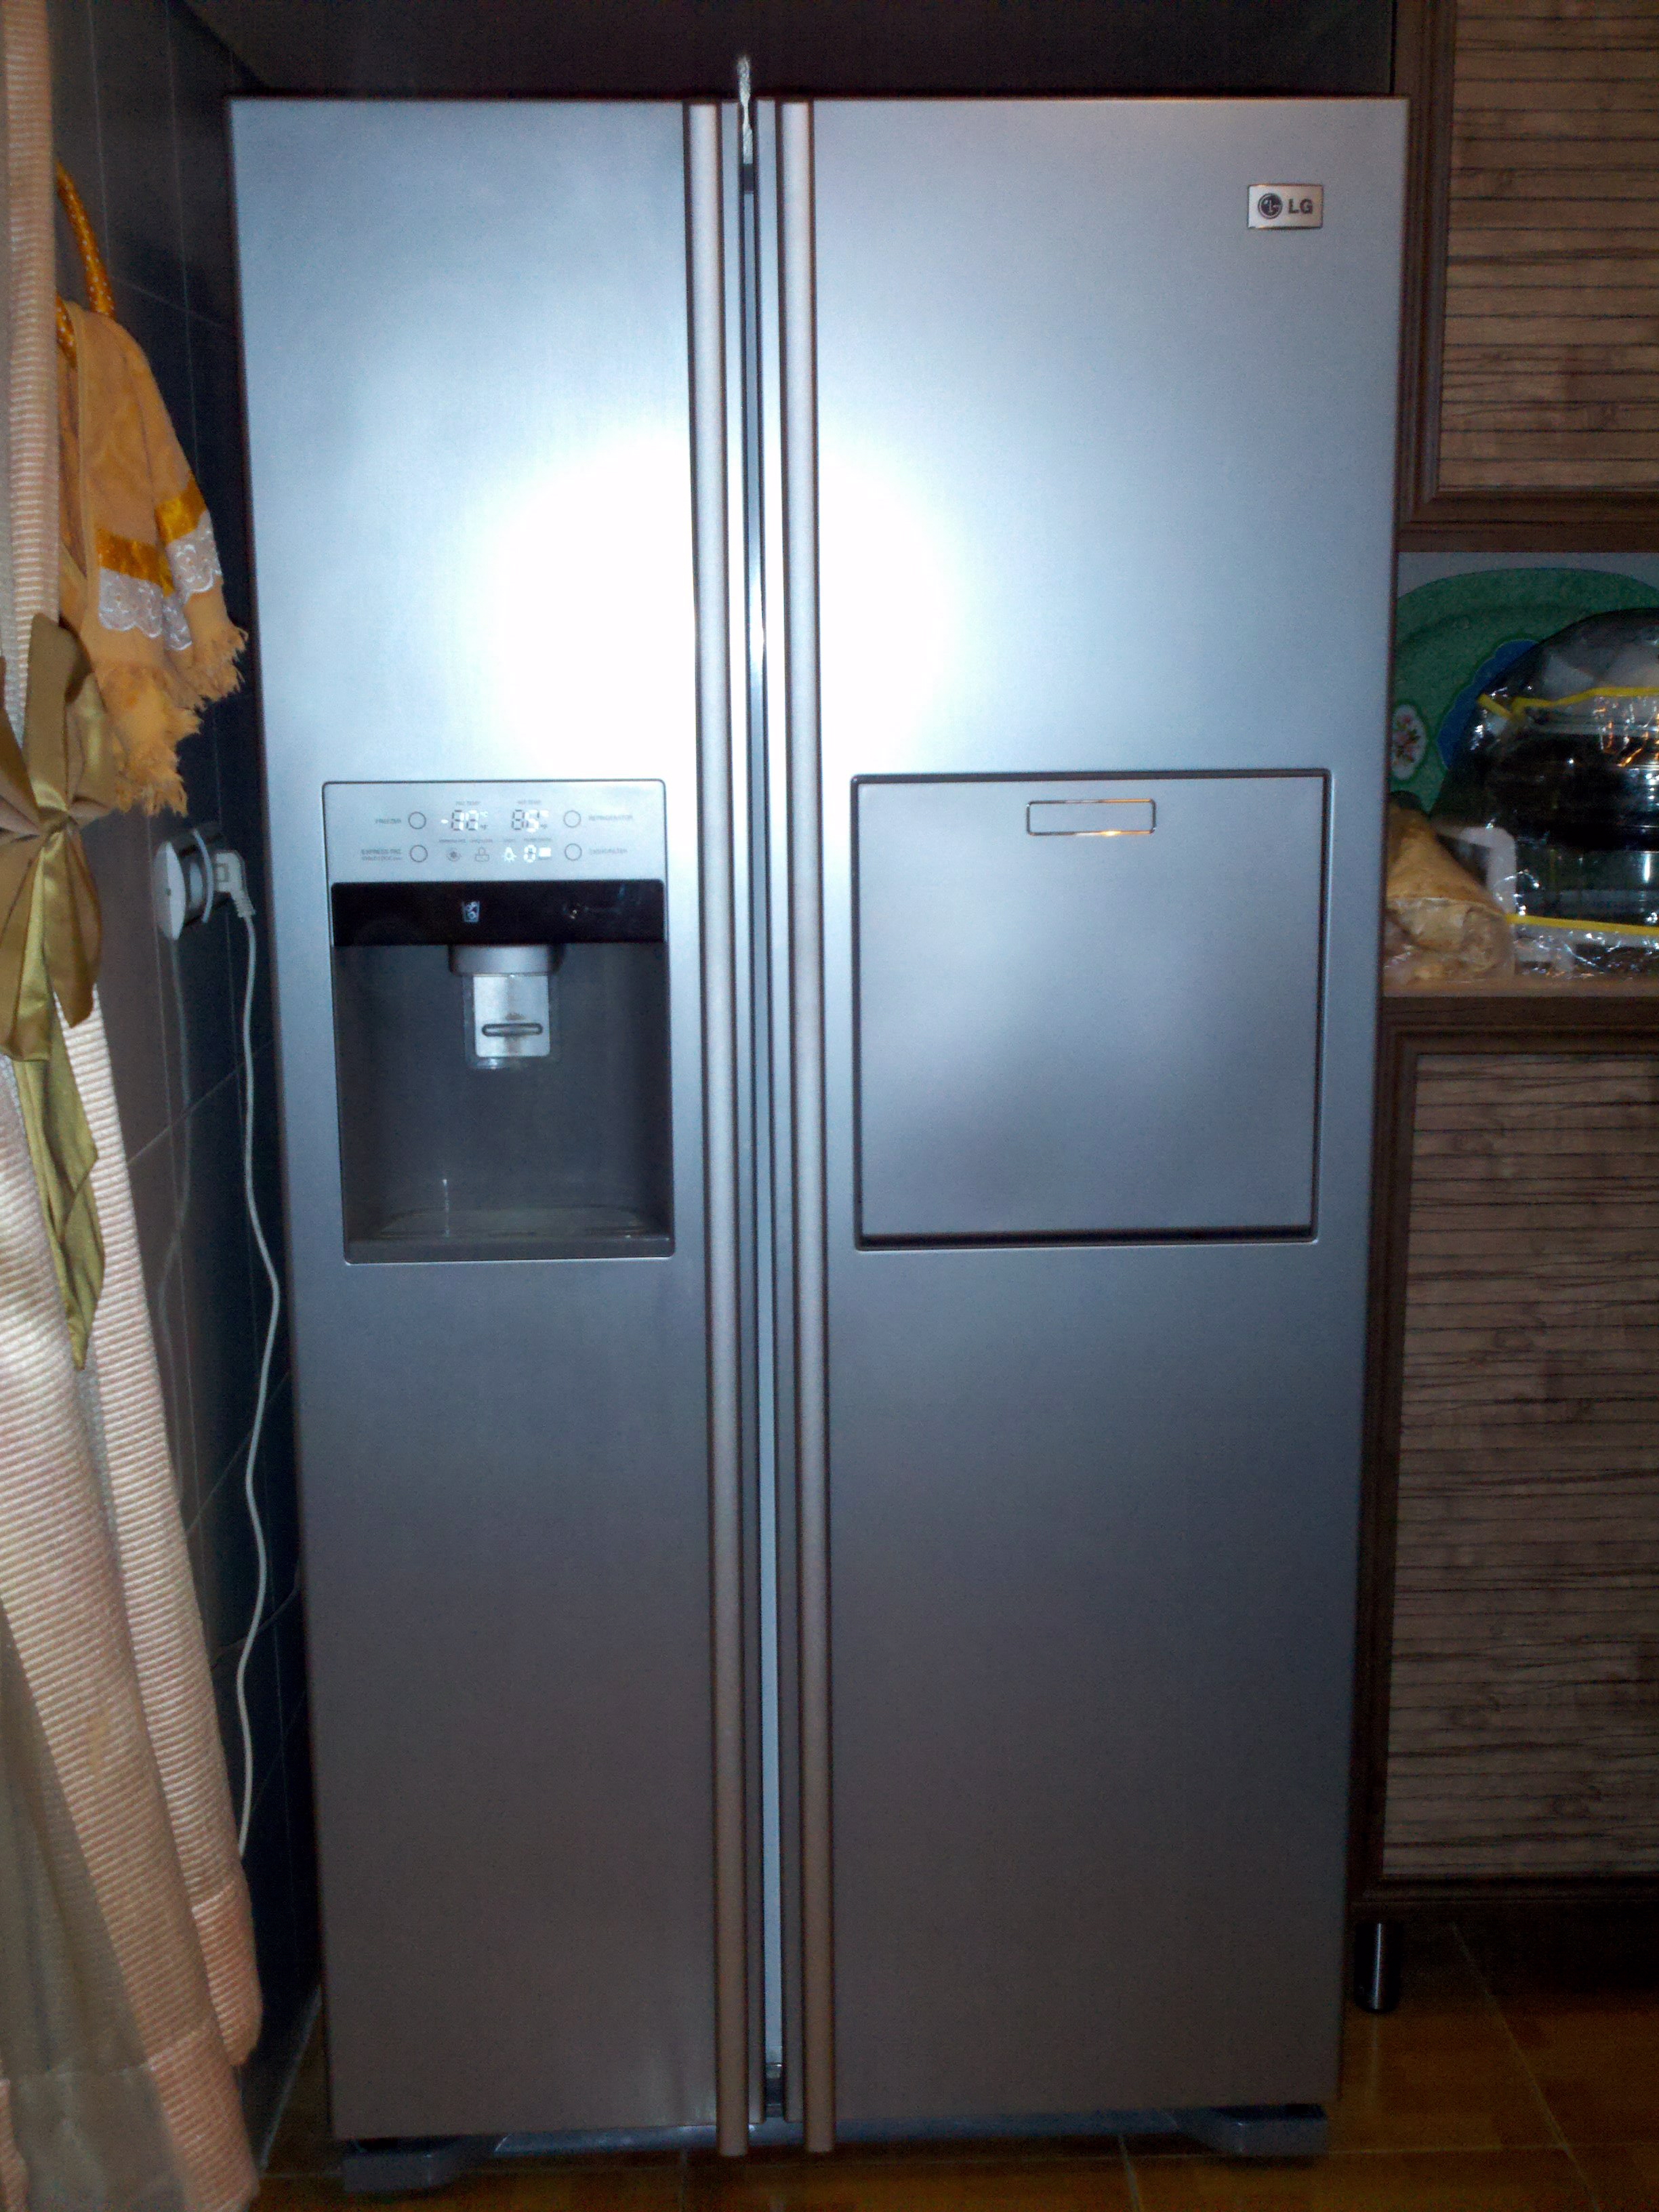 Lg Refrigerator Showing E